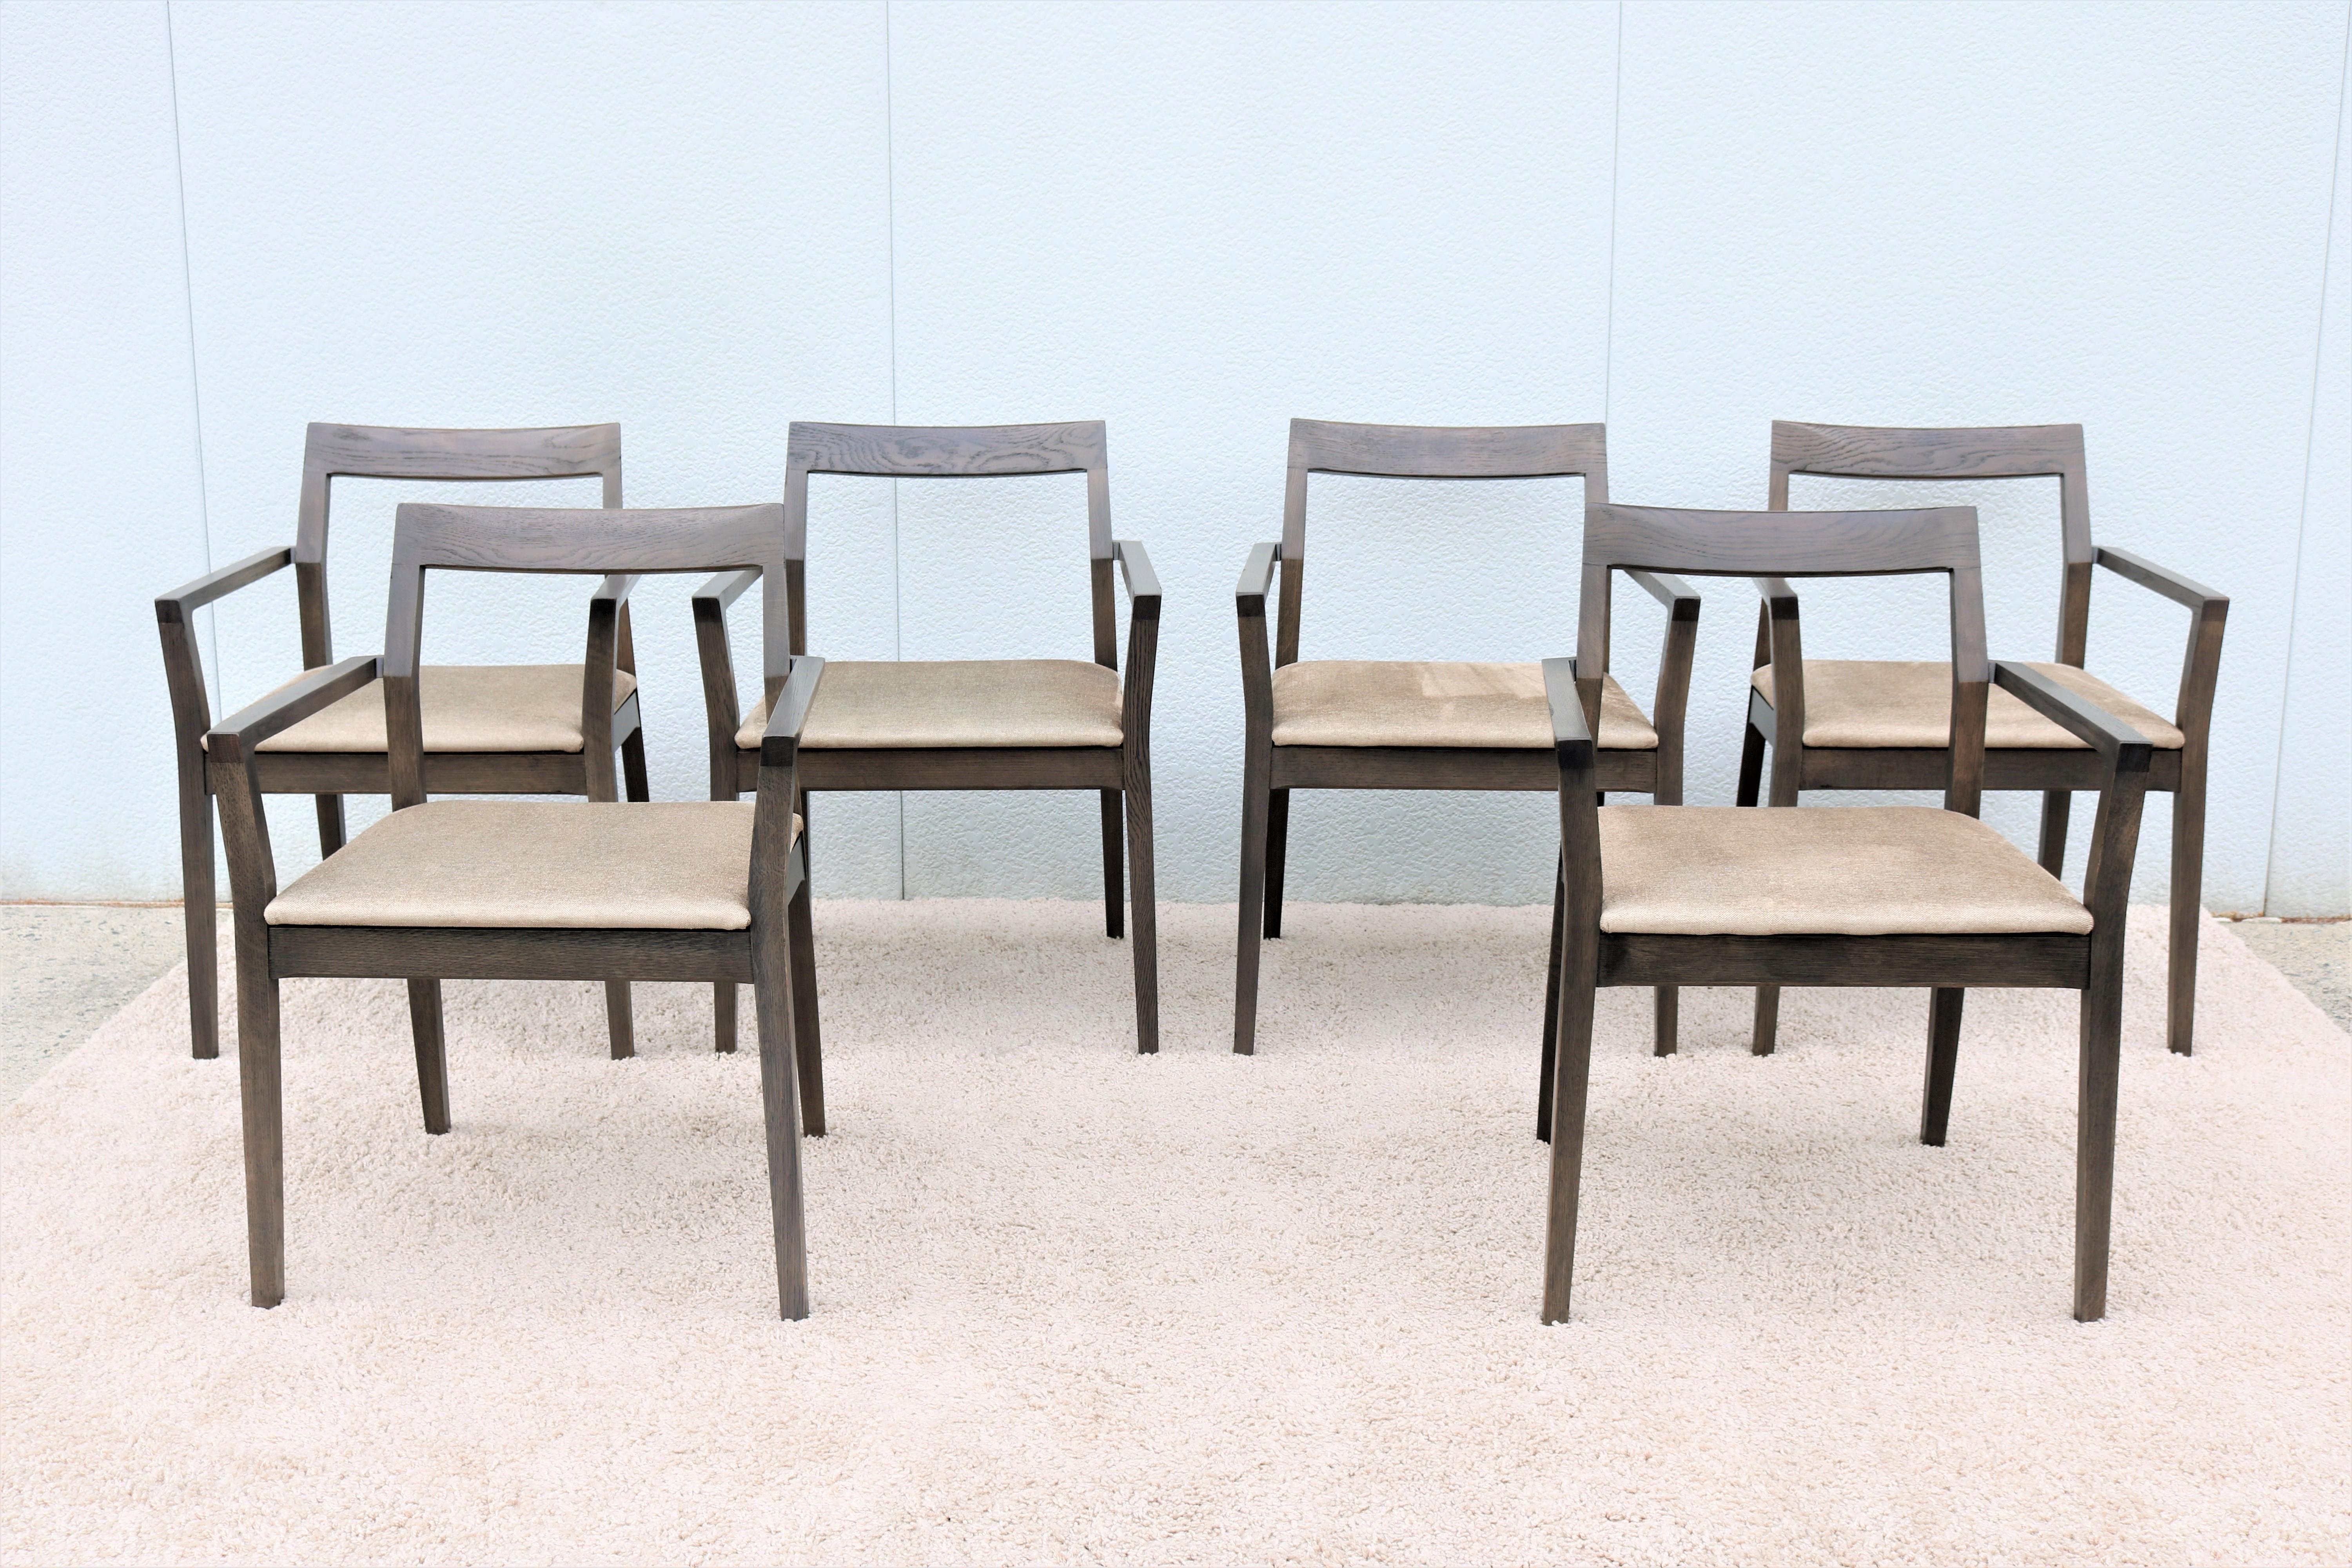 La chaise de salle à manger ou d'appoint en bois Krusin est contemporaine et très confortable.
Cadre bien construit et rail supérieur plié à la vapeur avec des lignes claires et gracieuses qui sont attrayantes sous tous les angles.
Idéal pour une